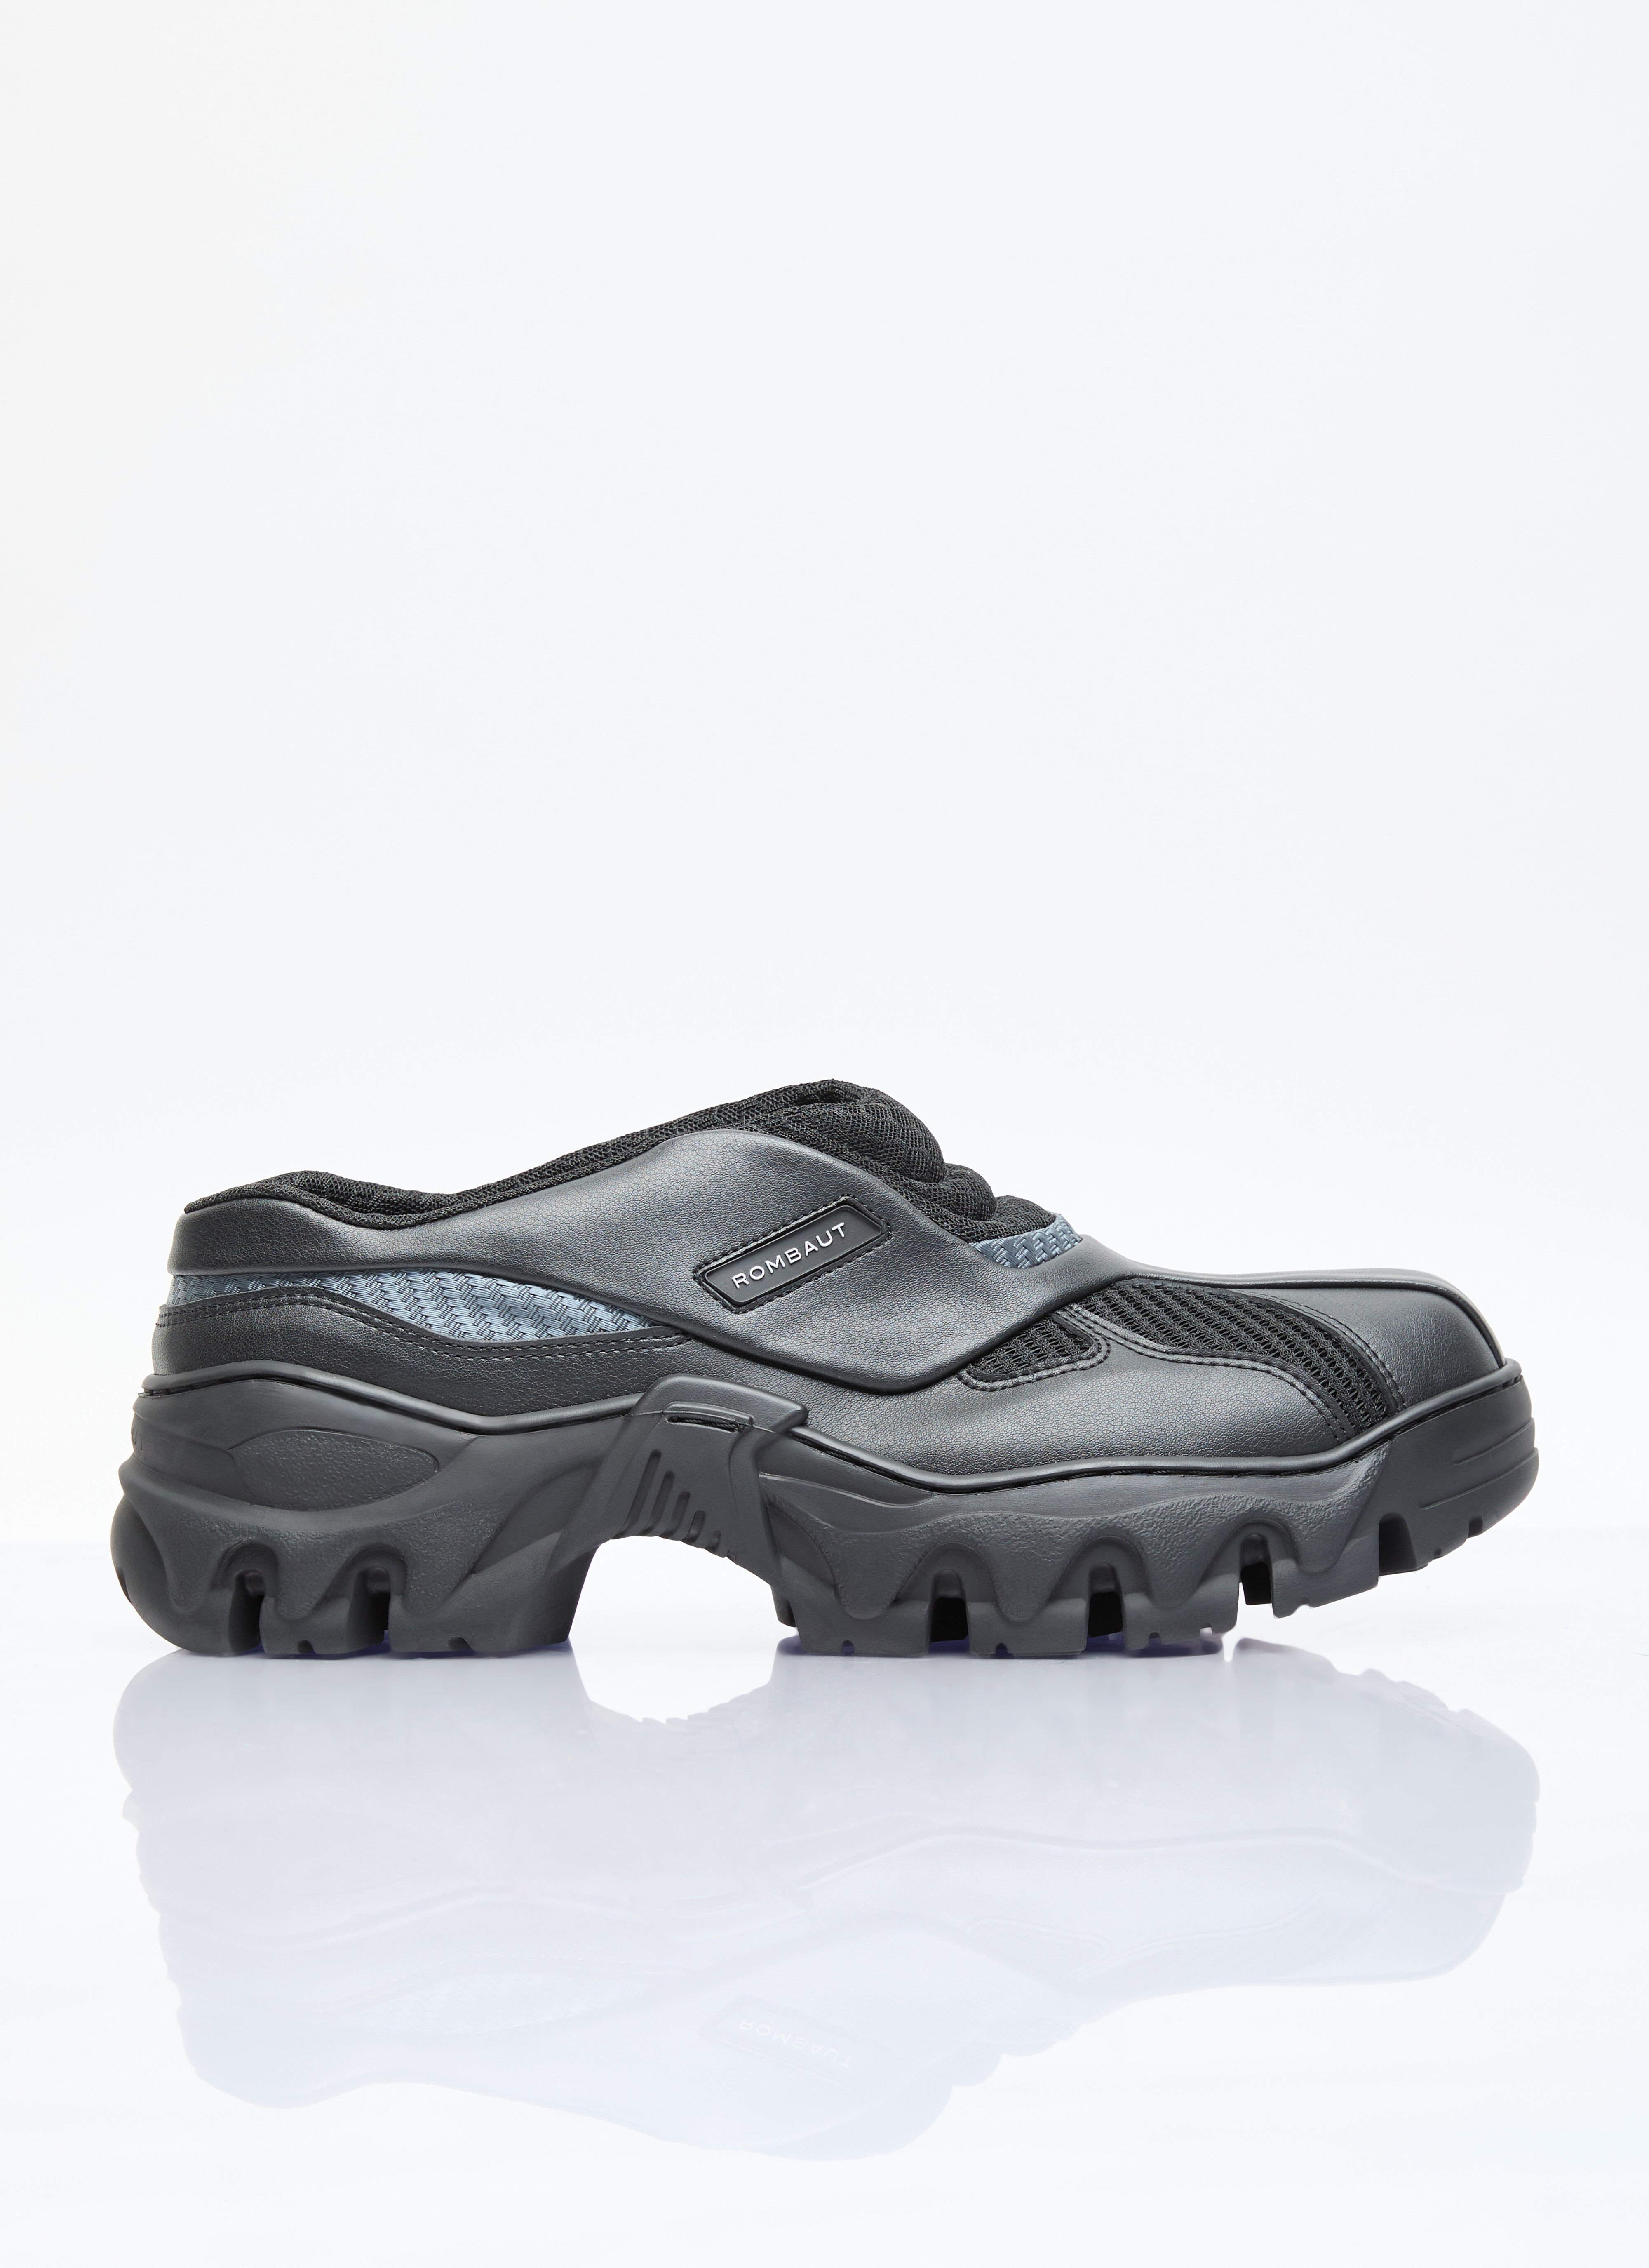 Rombaut Boccaccio II 山地运动鞋 黑色 rmb0244004